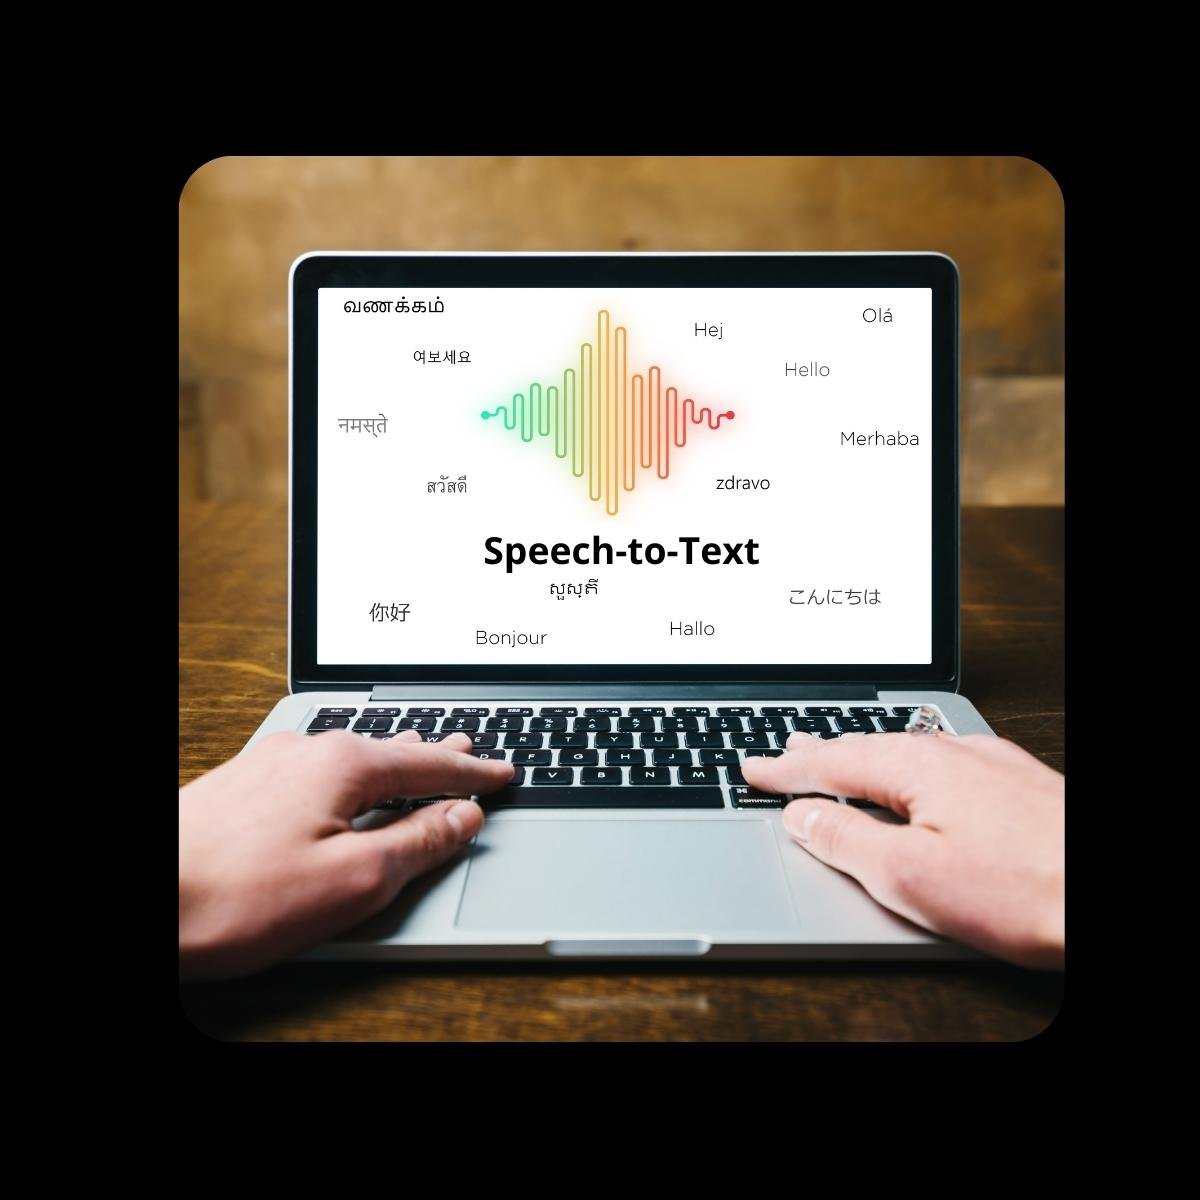 Speech-to-Text